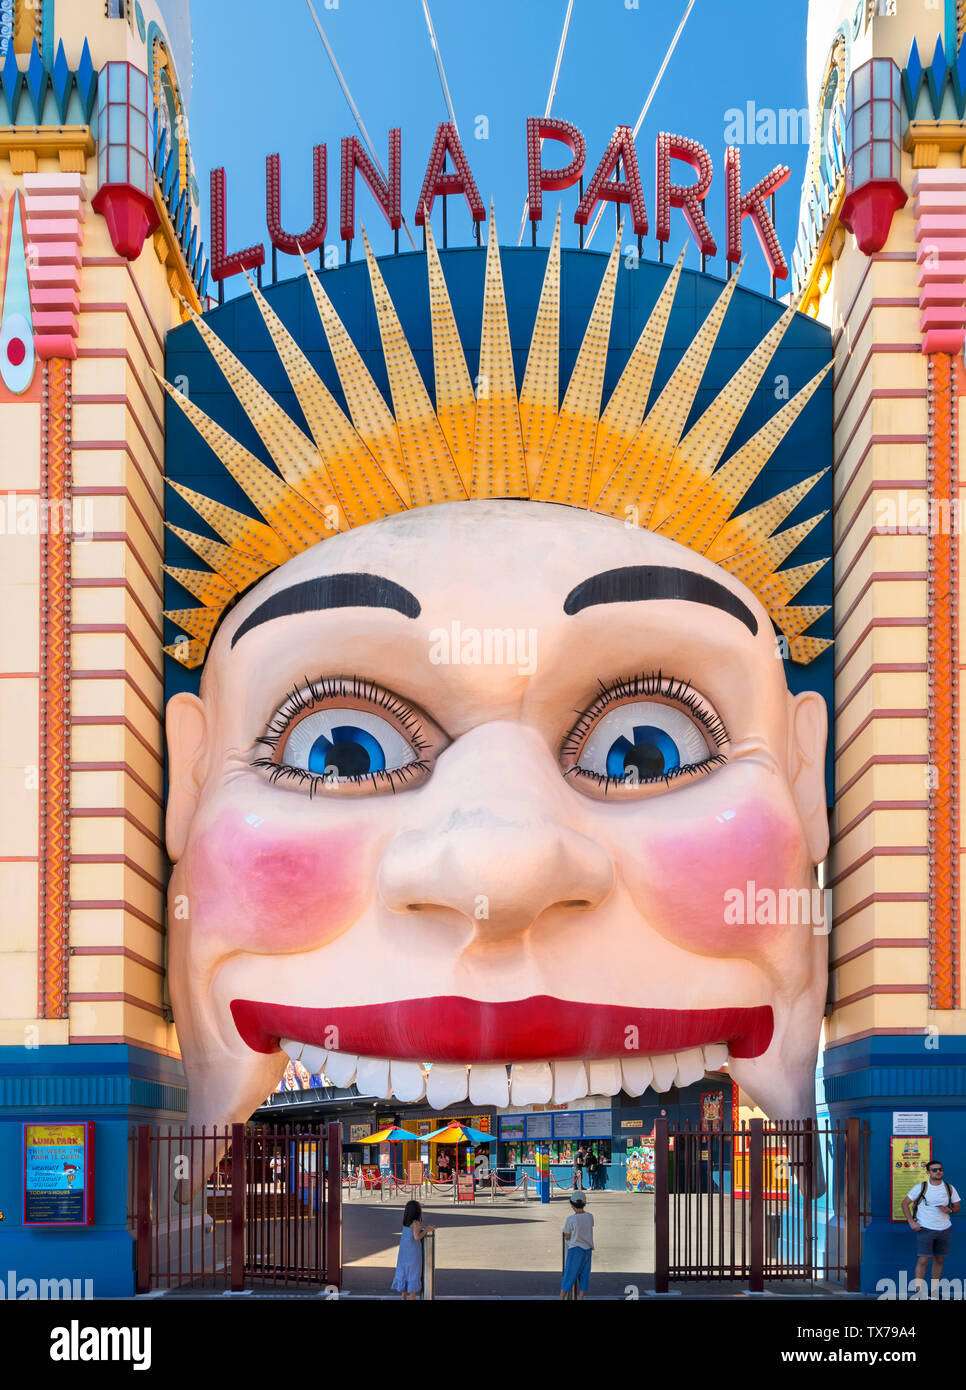 Entrée de Luna Park amusement park, Milsons Point, Sydney, New South Wales, Australia Banque D'Images